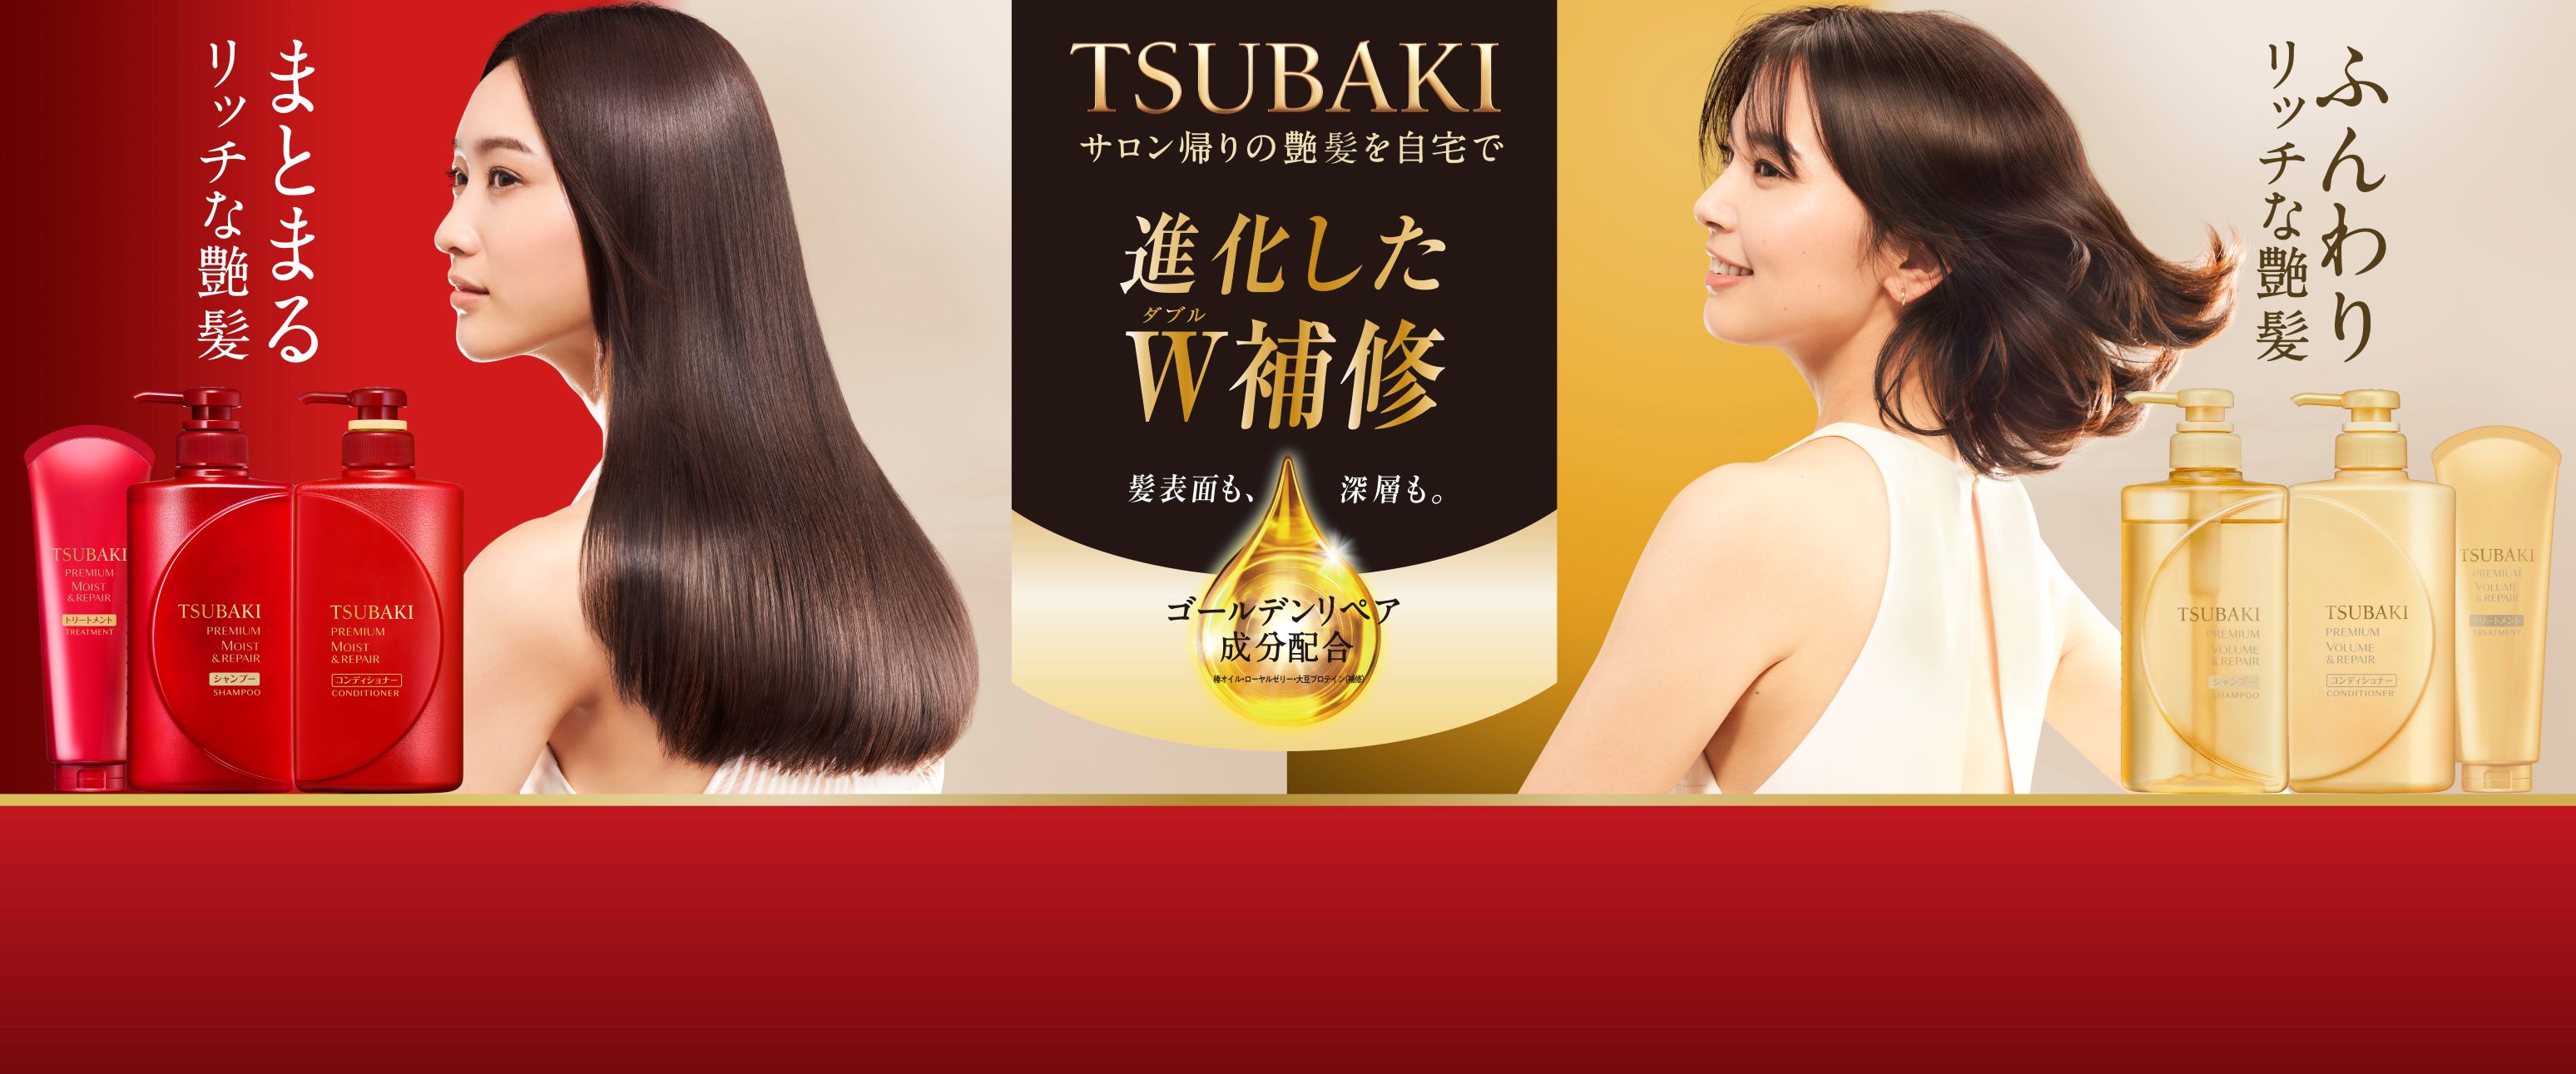 この秋 Tsubakiシリーズが変わる 1 Tsubaki ベーシックシリーズがアップグレード 株式会社ファイントゥデイのプレスリリース